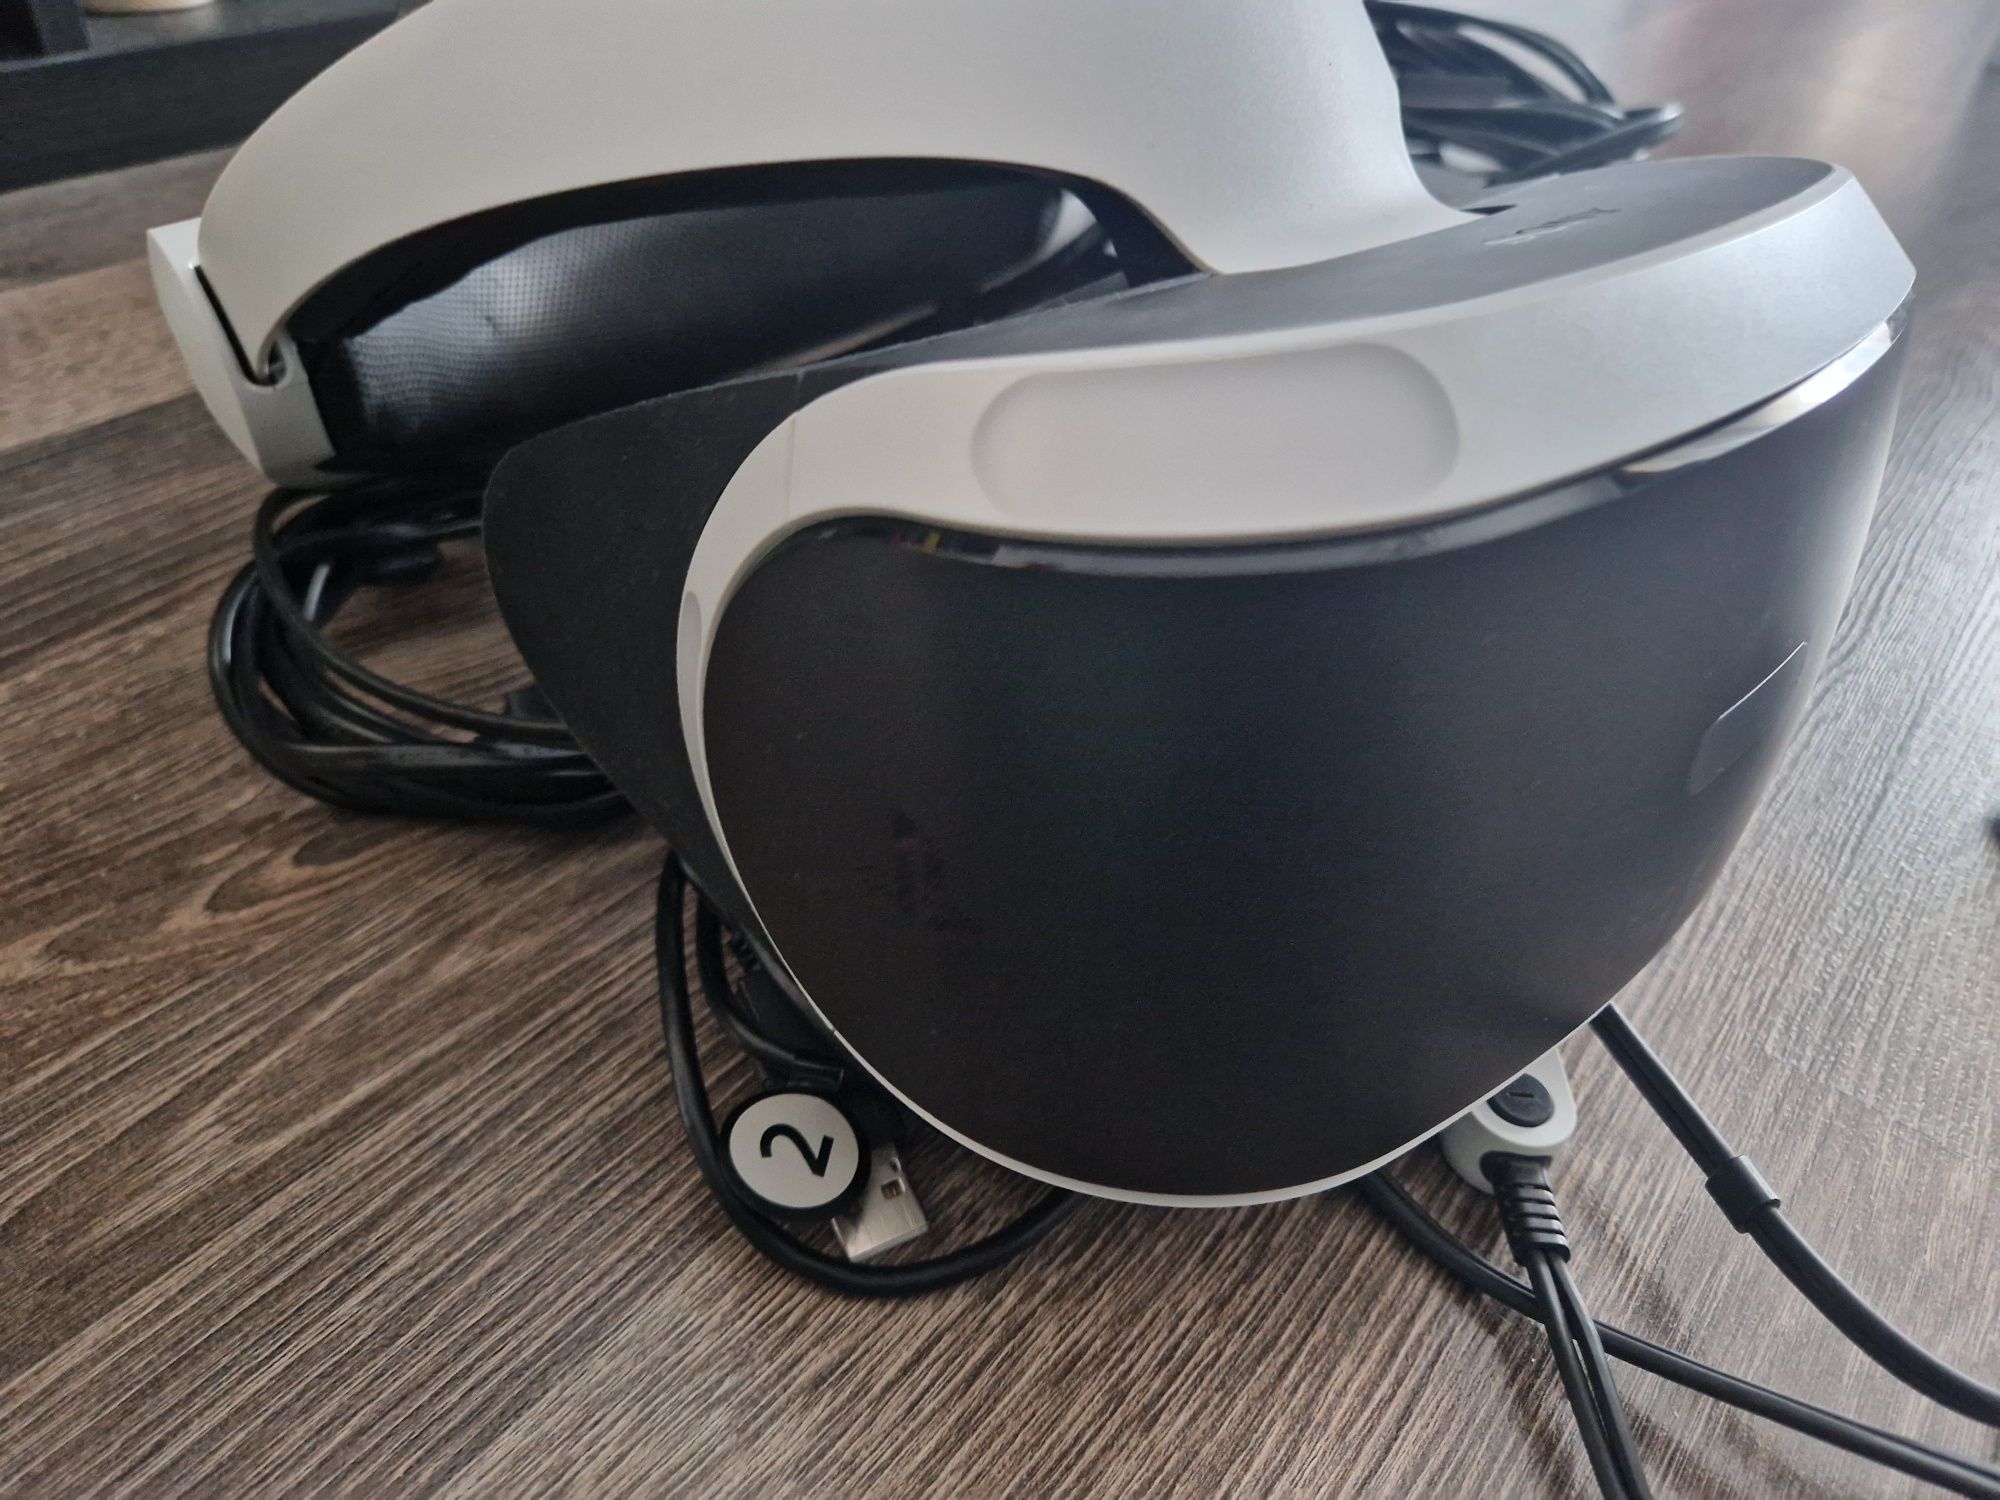 Kit VR headset, motion controllers și cameră (întreg sau individual)